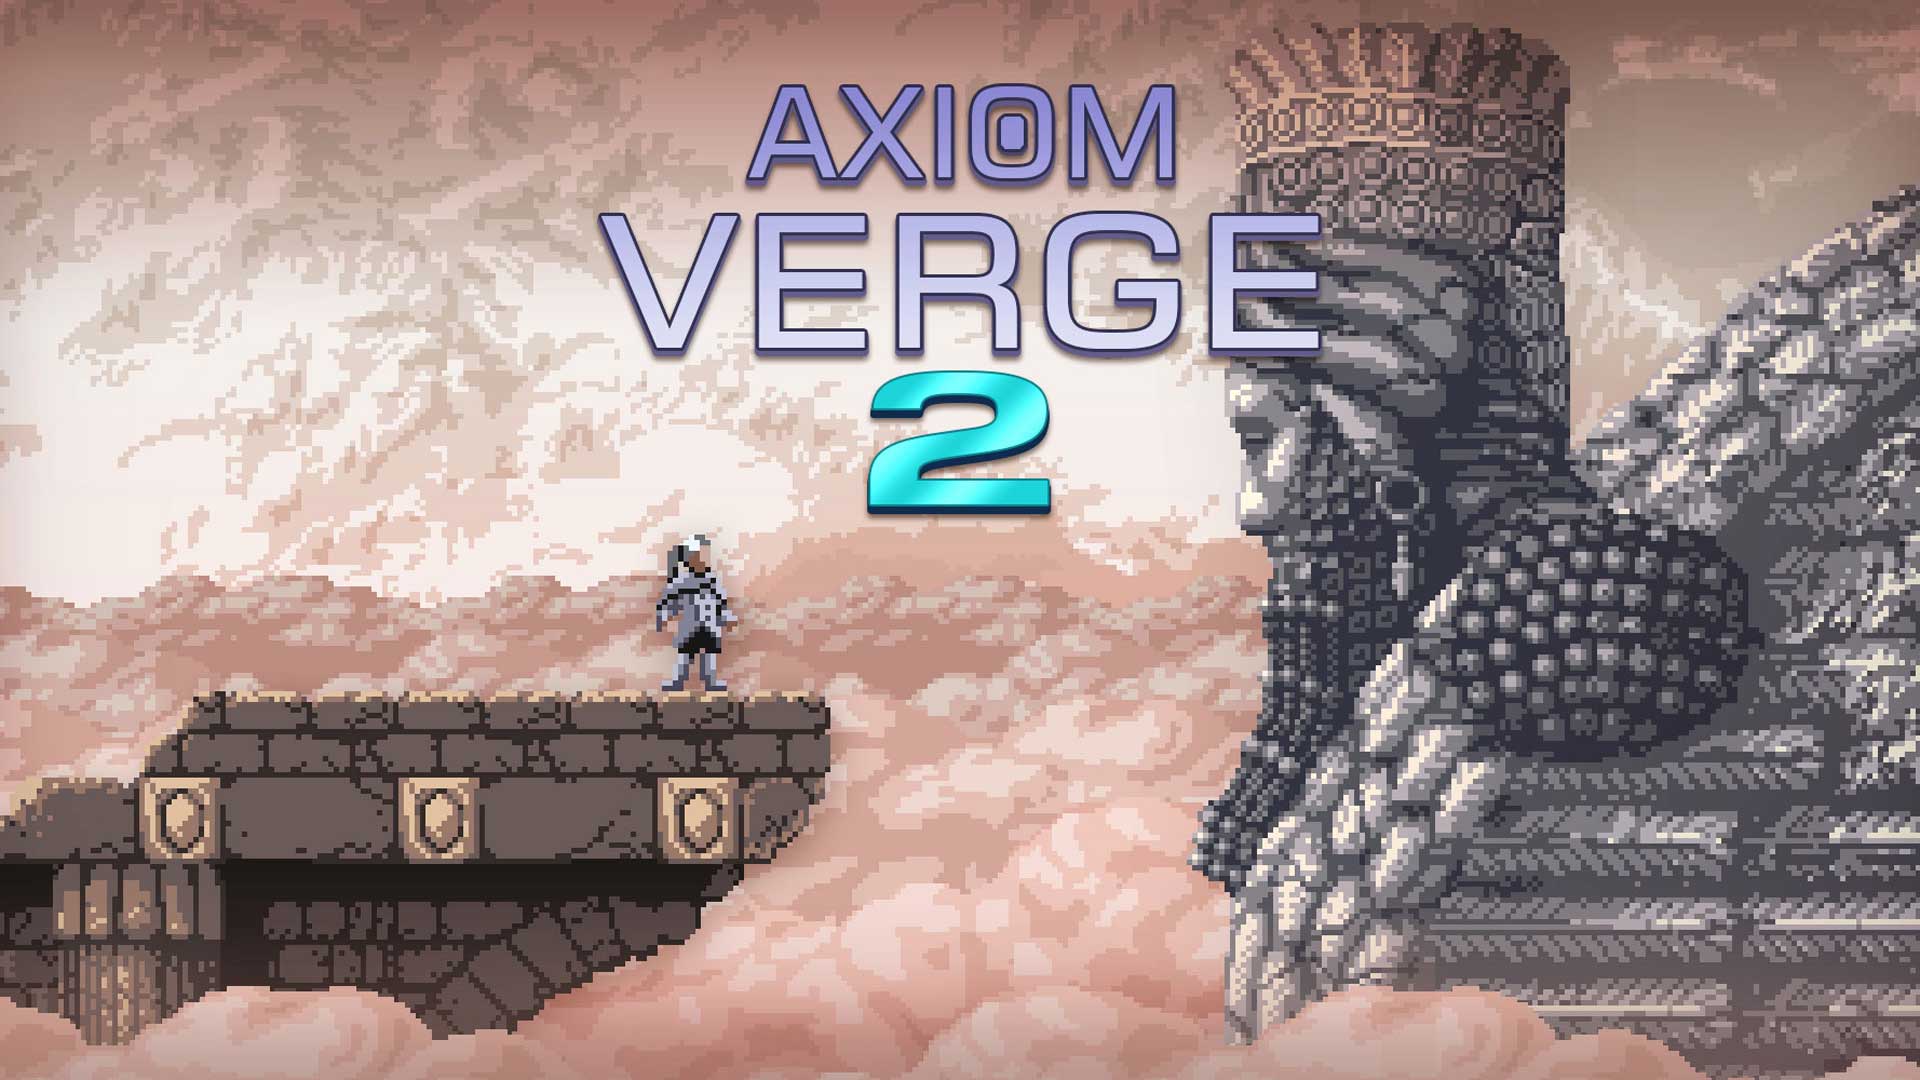 تایید عرضه بازی Axiom Verge 2 برای پلی استیشن 4 و پلی استیشن 5